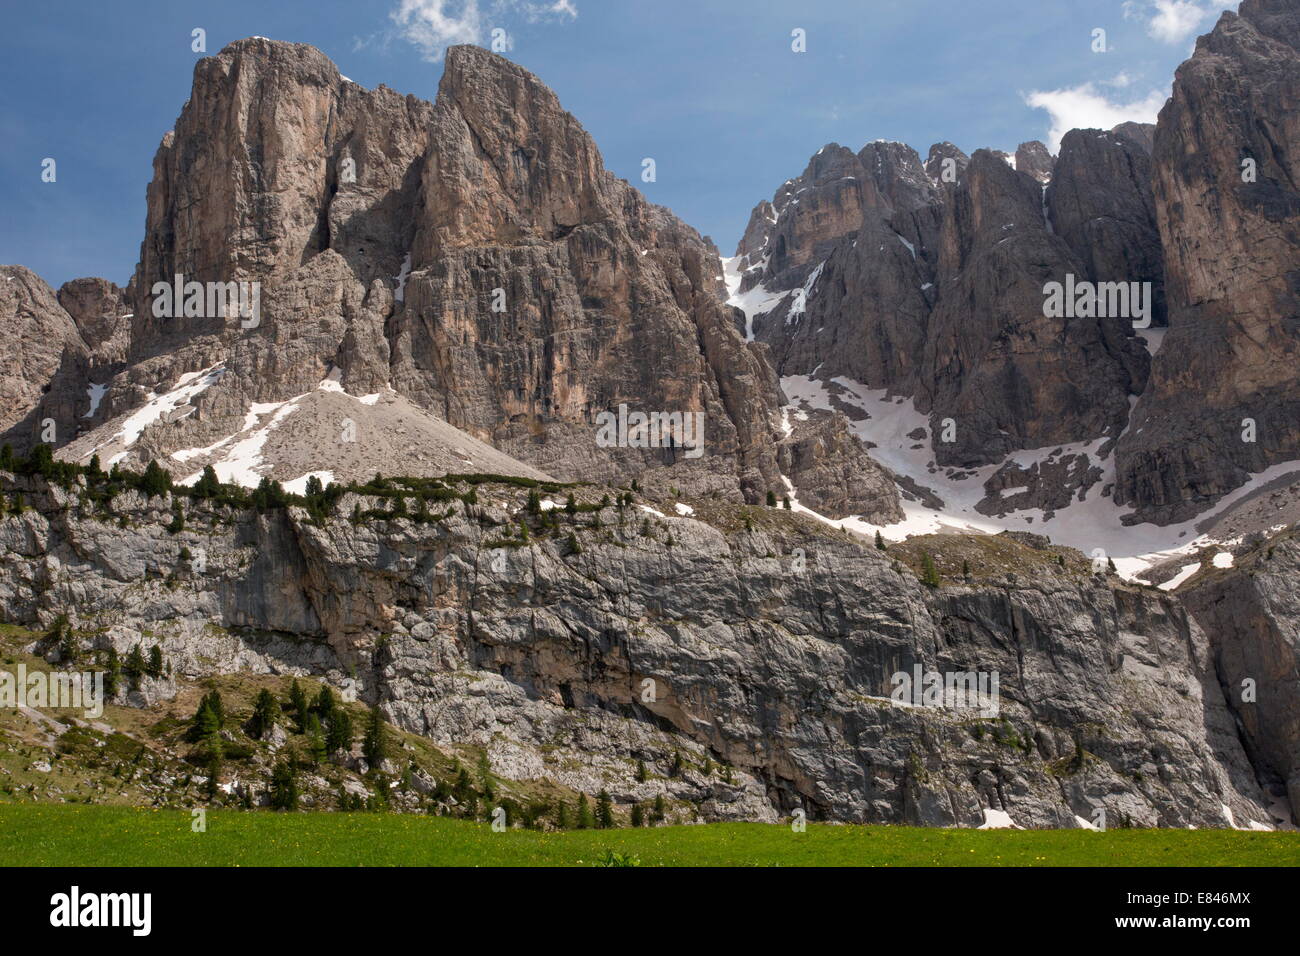 Nördlichen Klippen der Sella-Gruppe - Gruppo di Sella, im Frühsommer; Dolomiten, Italien Stockfoto